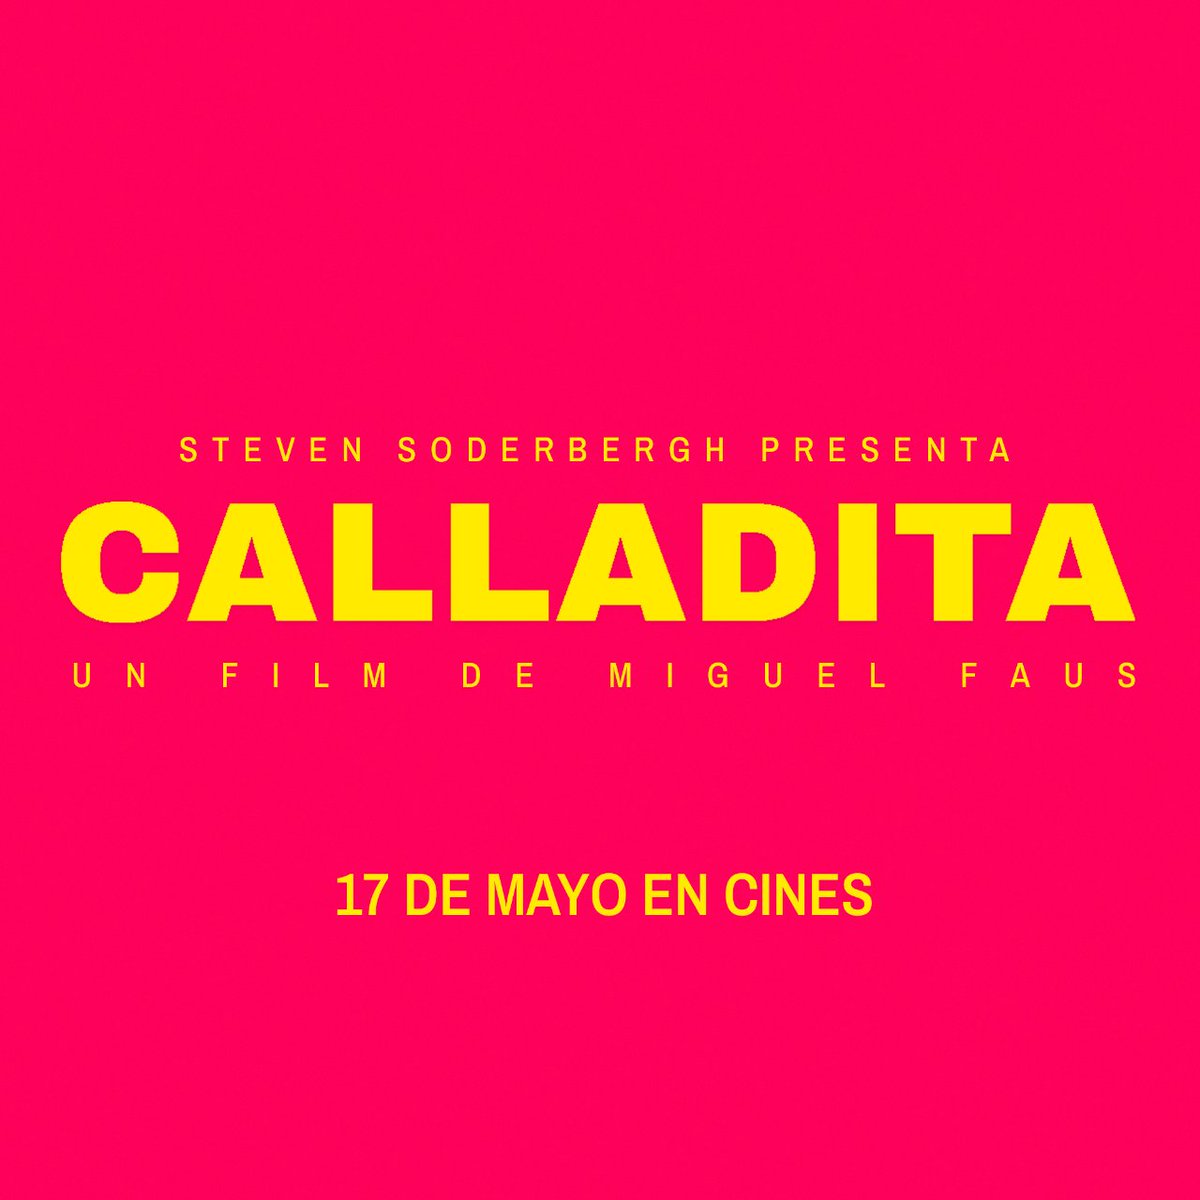 Como dirían los patrones: 'Trabajo duro y discreción' 😒🙄 🍿🎬 No te pierdas #CalladitaFilm el 17 de mayo en cines #Calladita #CalladitaFilm #CalladitaLaPelícula